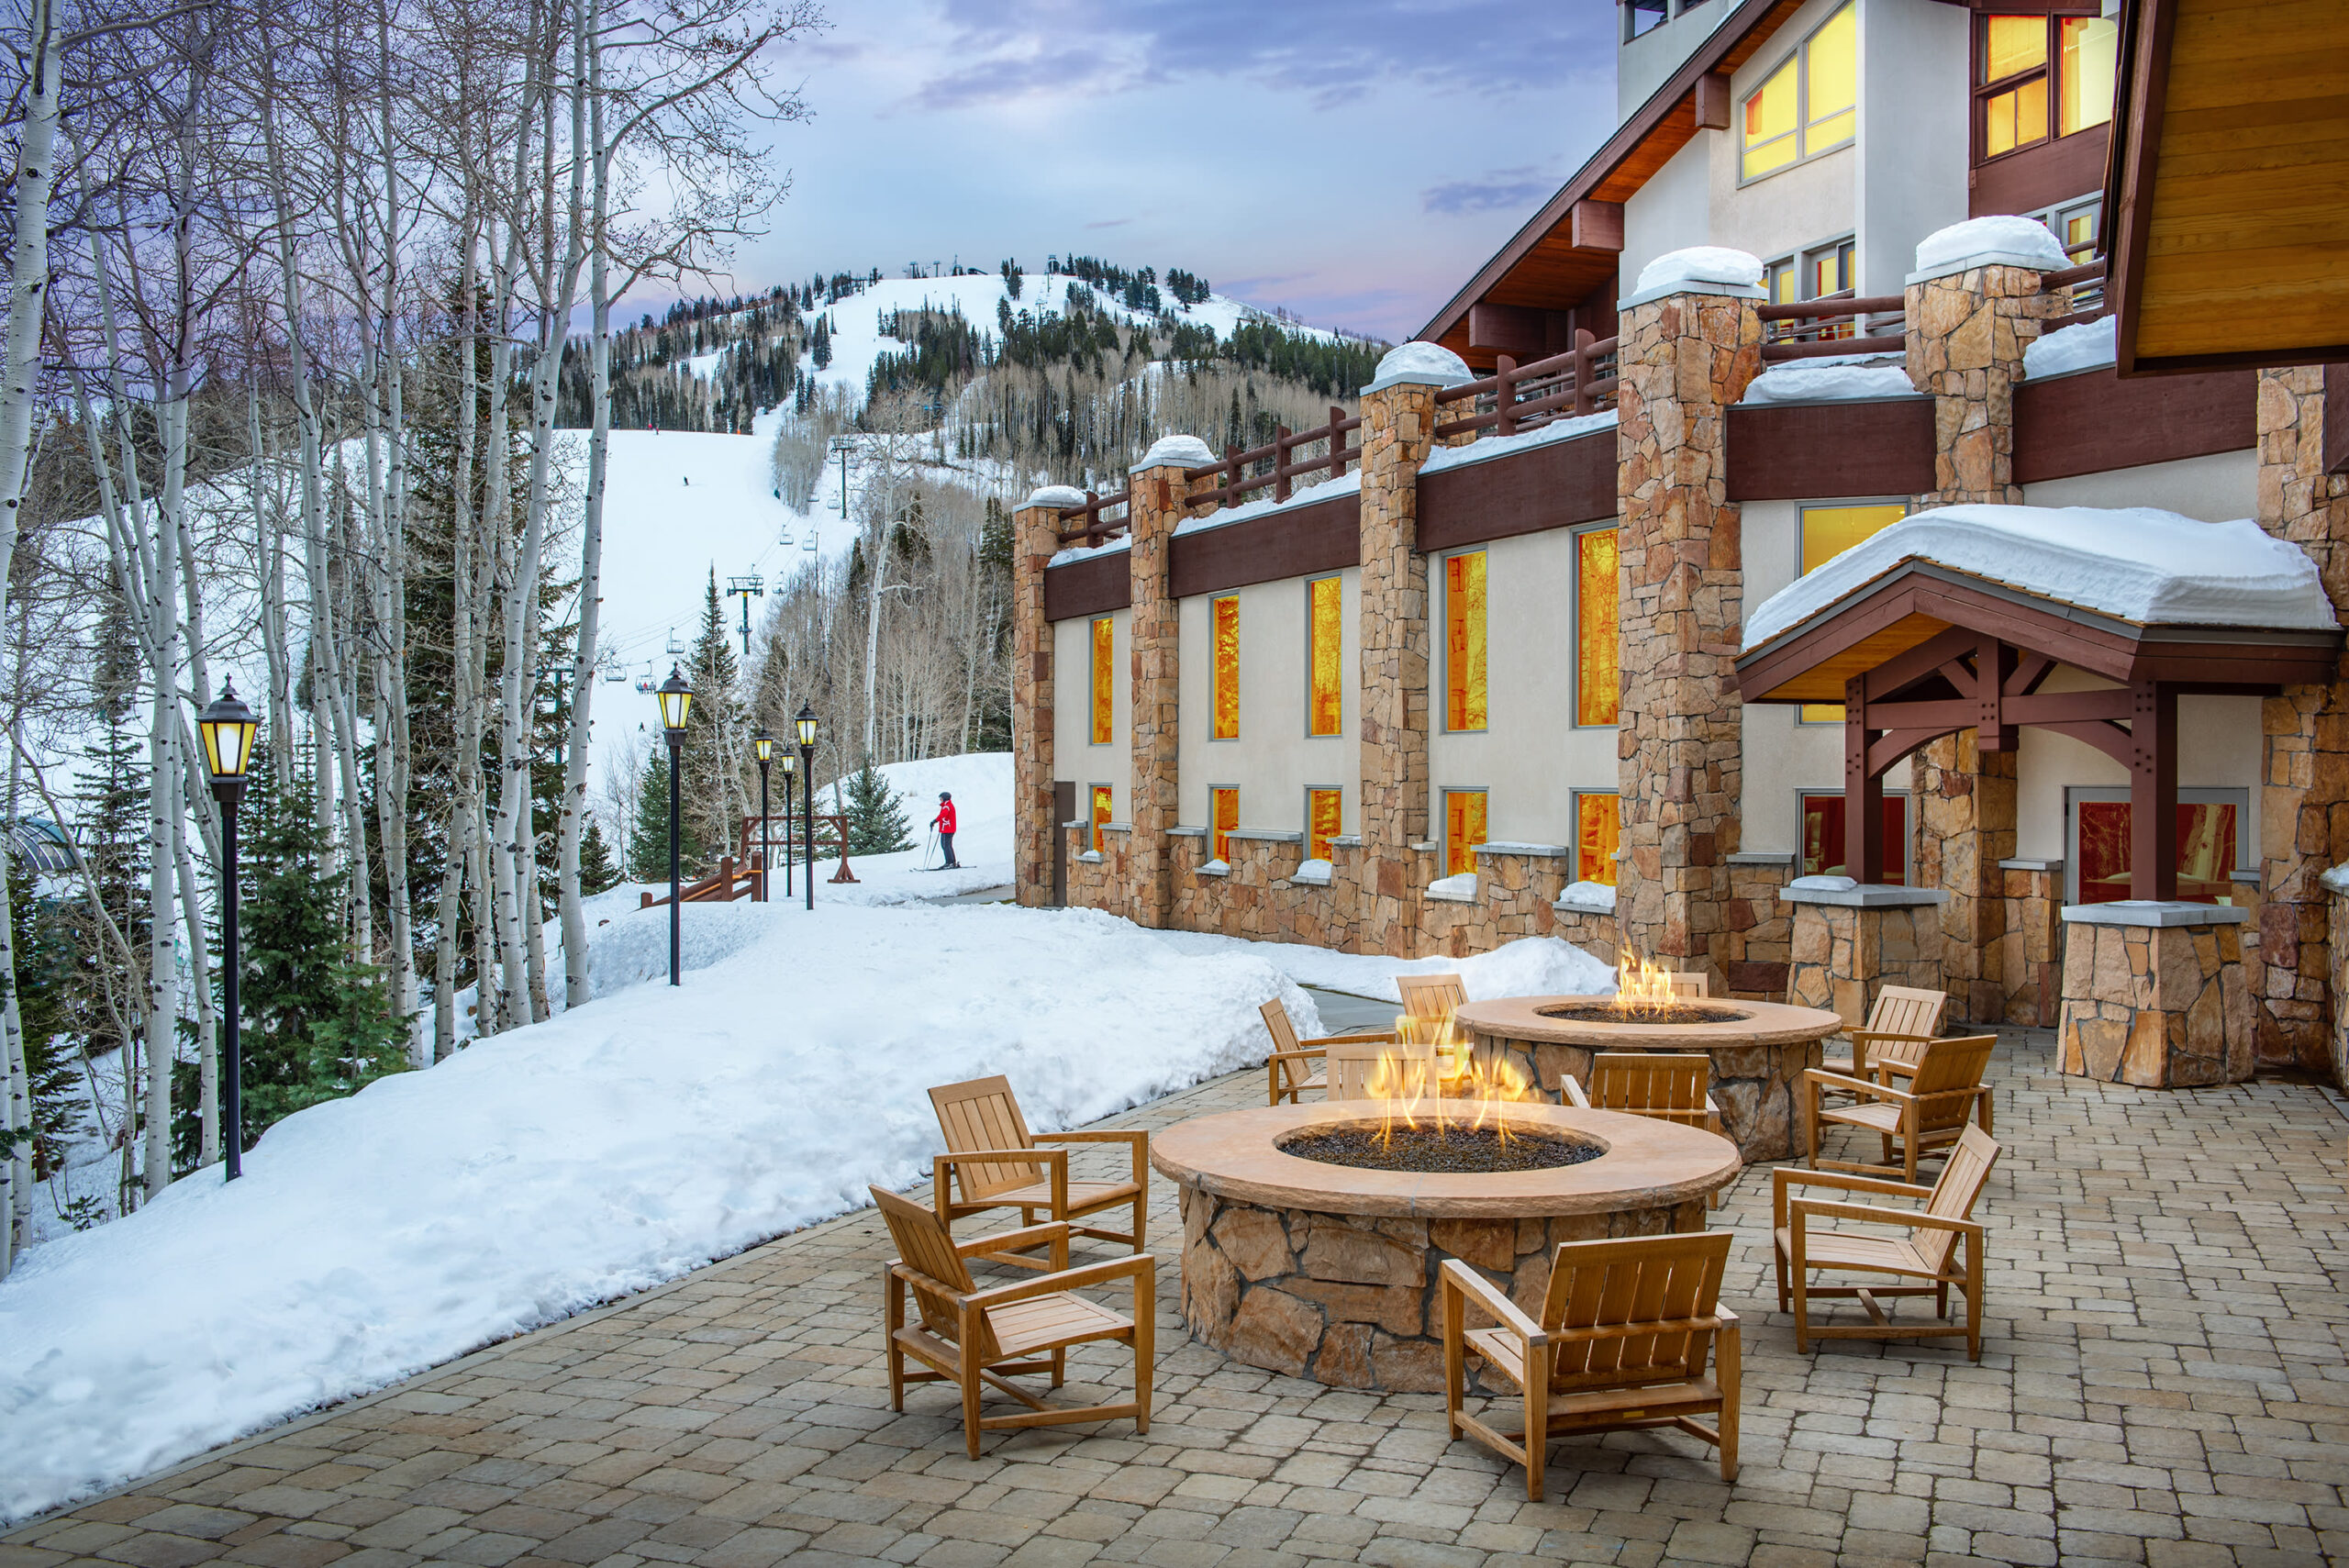  Stein Eriksen Lodge foi considerado o melhor  hotel de esqui do mundo